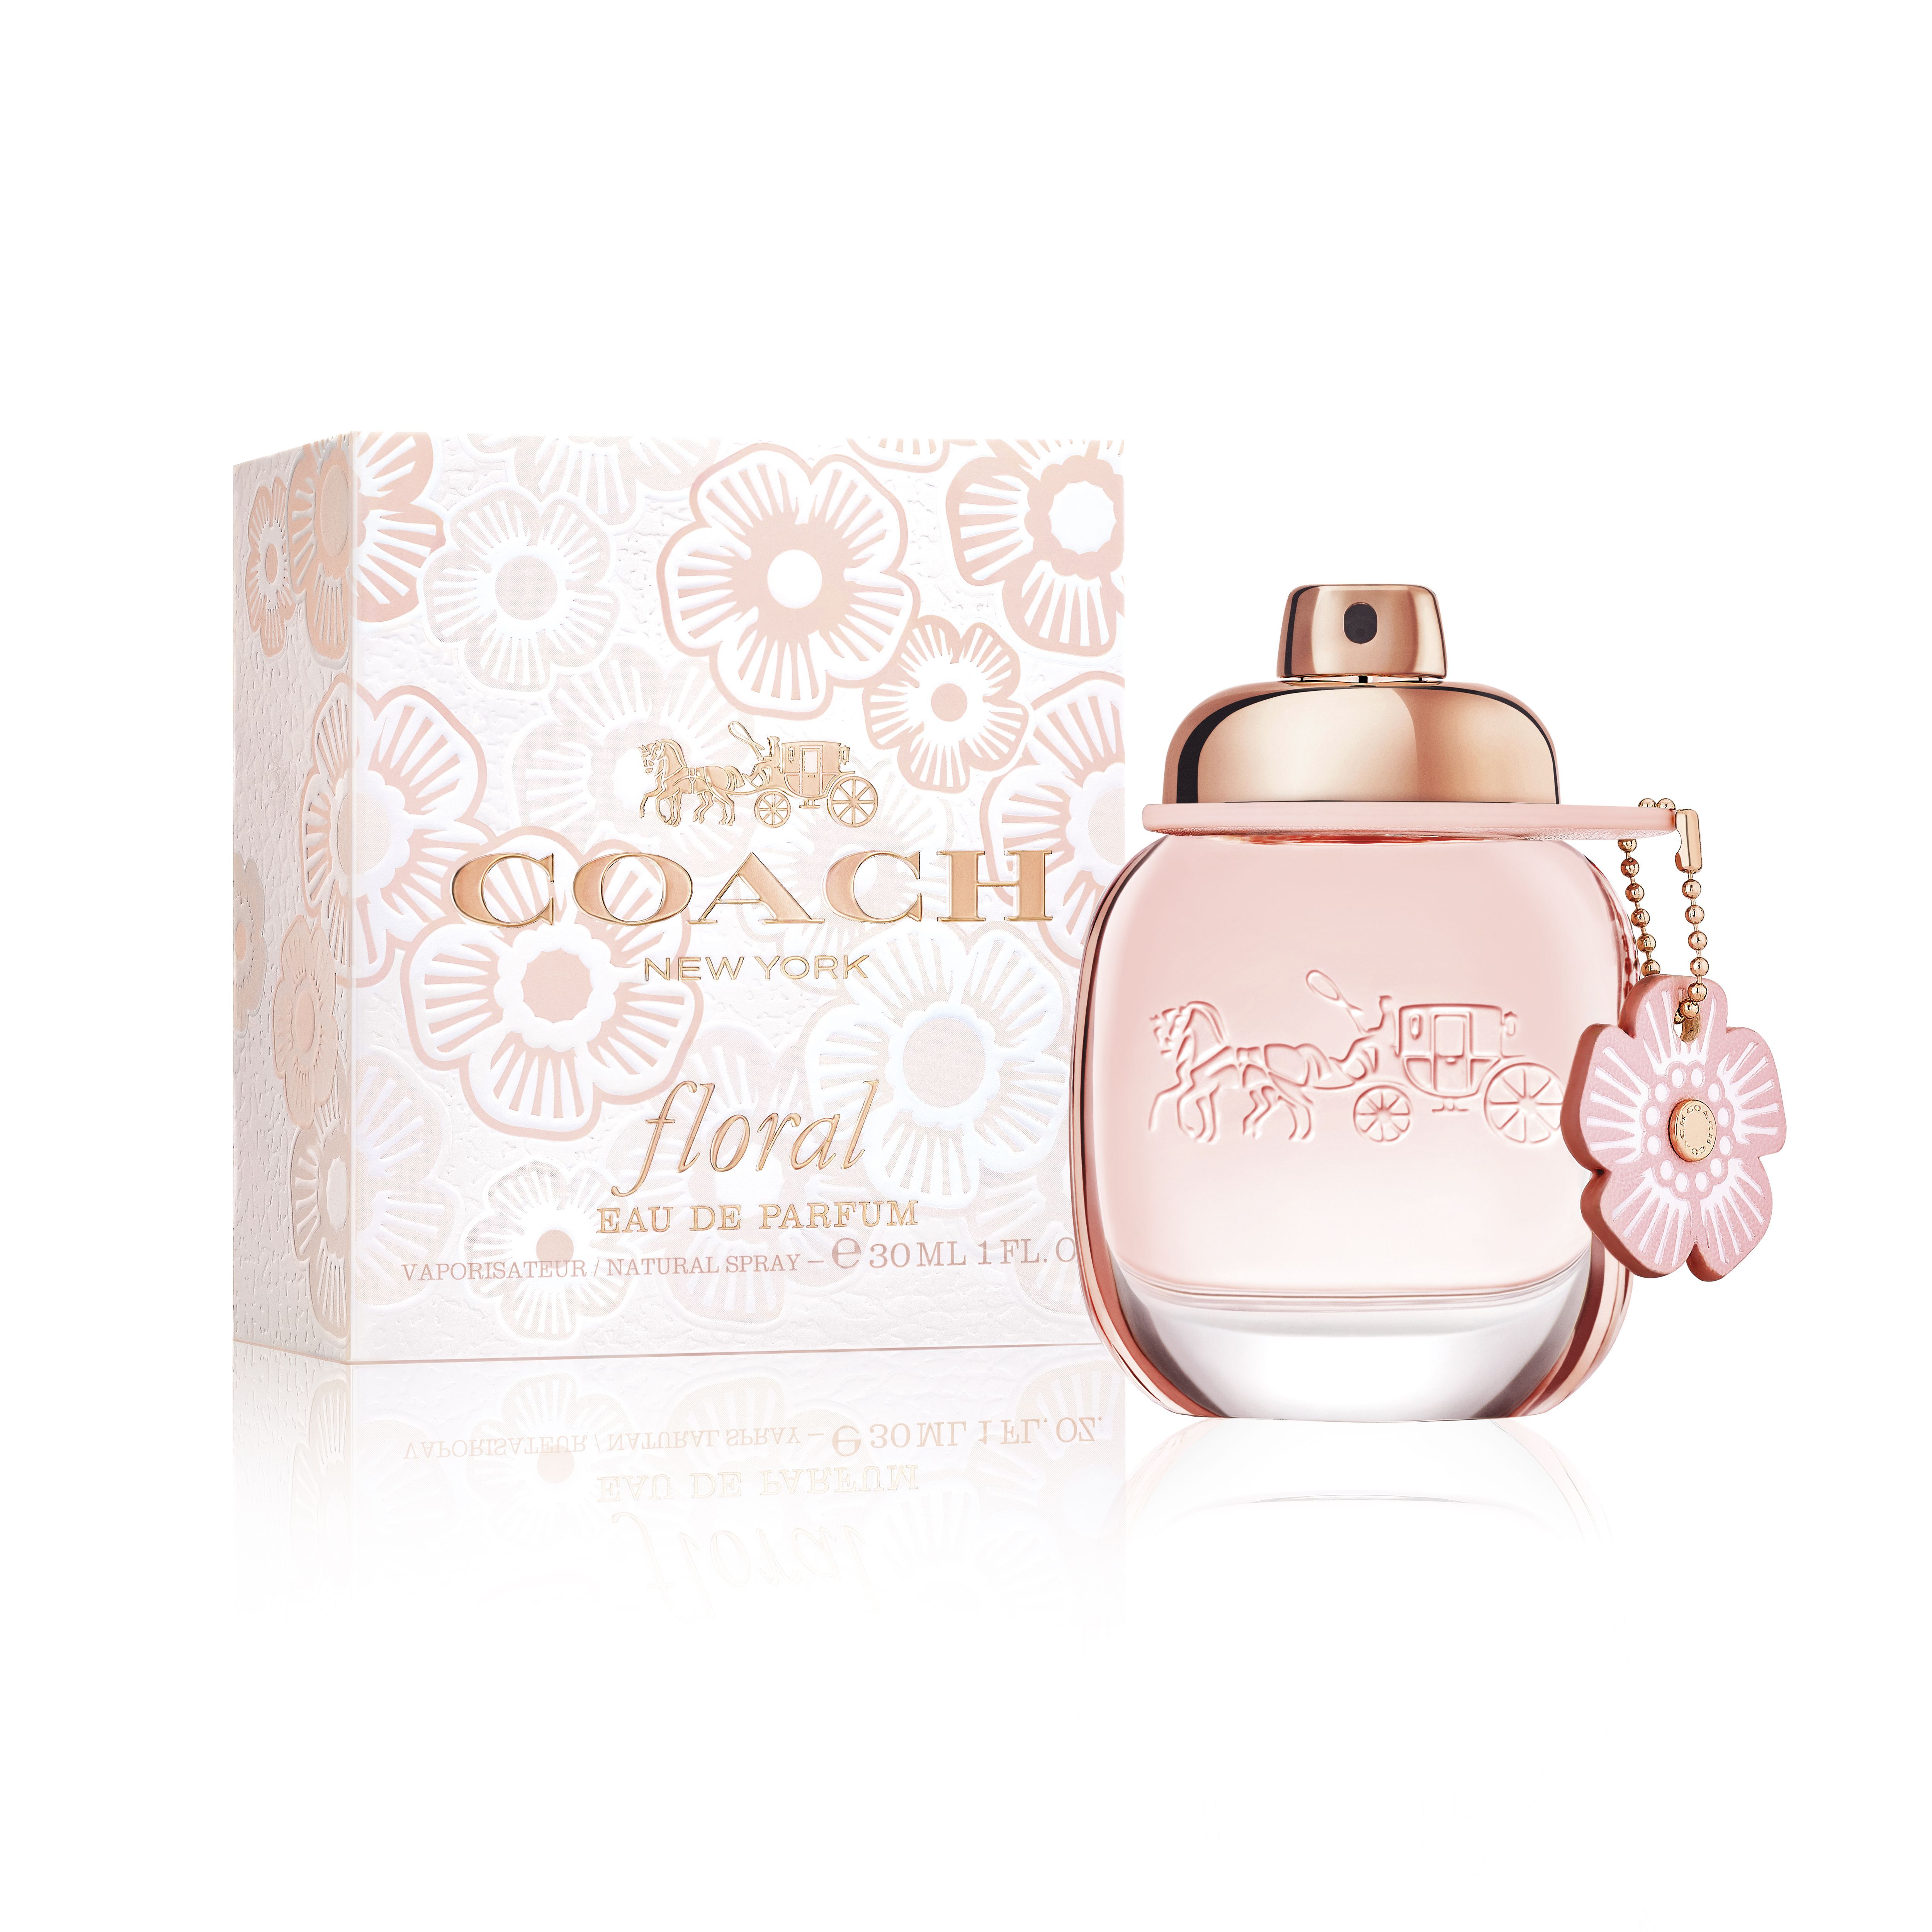 coach floral eau de parfum 90 ml set for women Женская парфюмерная вода Coach Floral, 30 мл